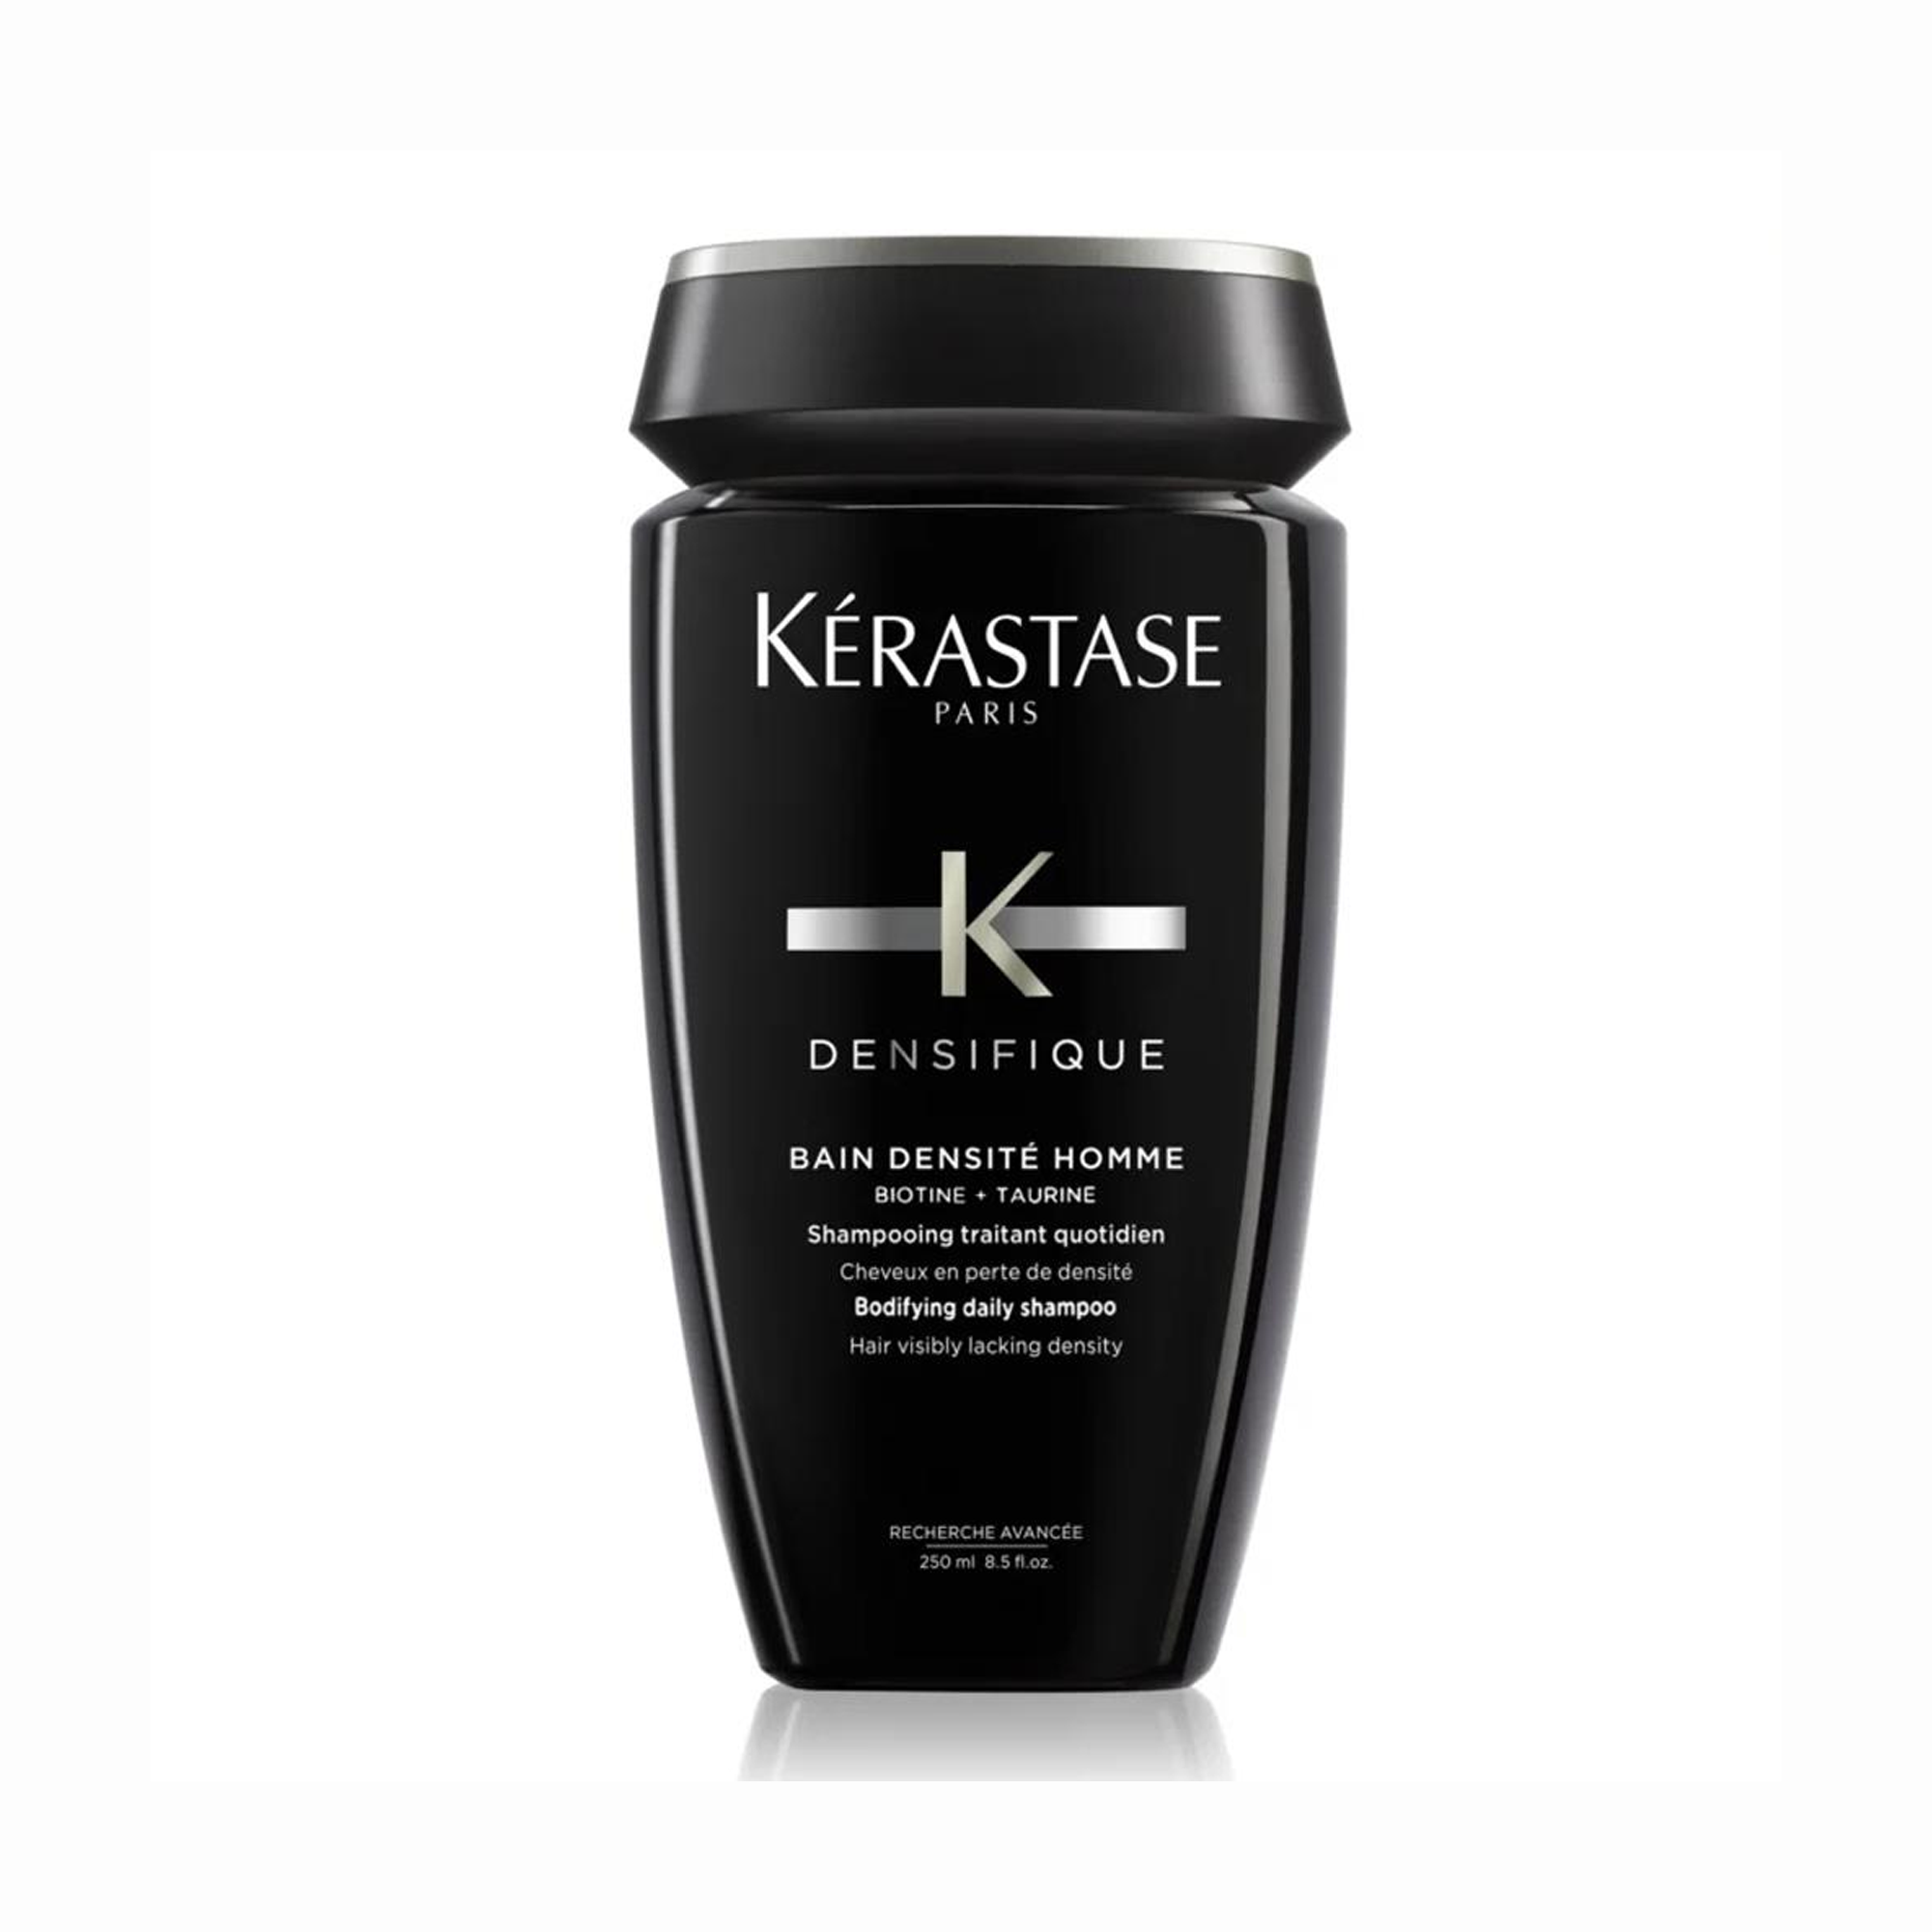 Kerastase Densifique Homme Yoğunlaştırıcı Bakım Kürü 30x6 ml + Bain Densite Homme Şampuan 250 ml